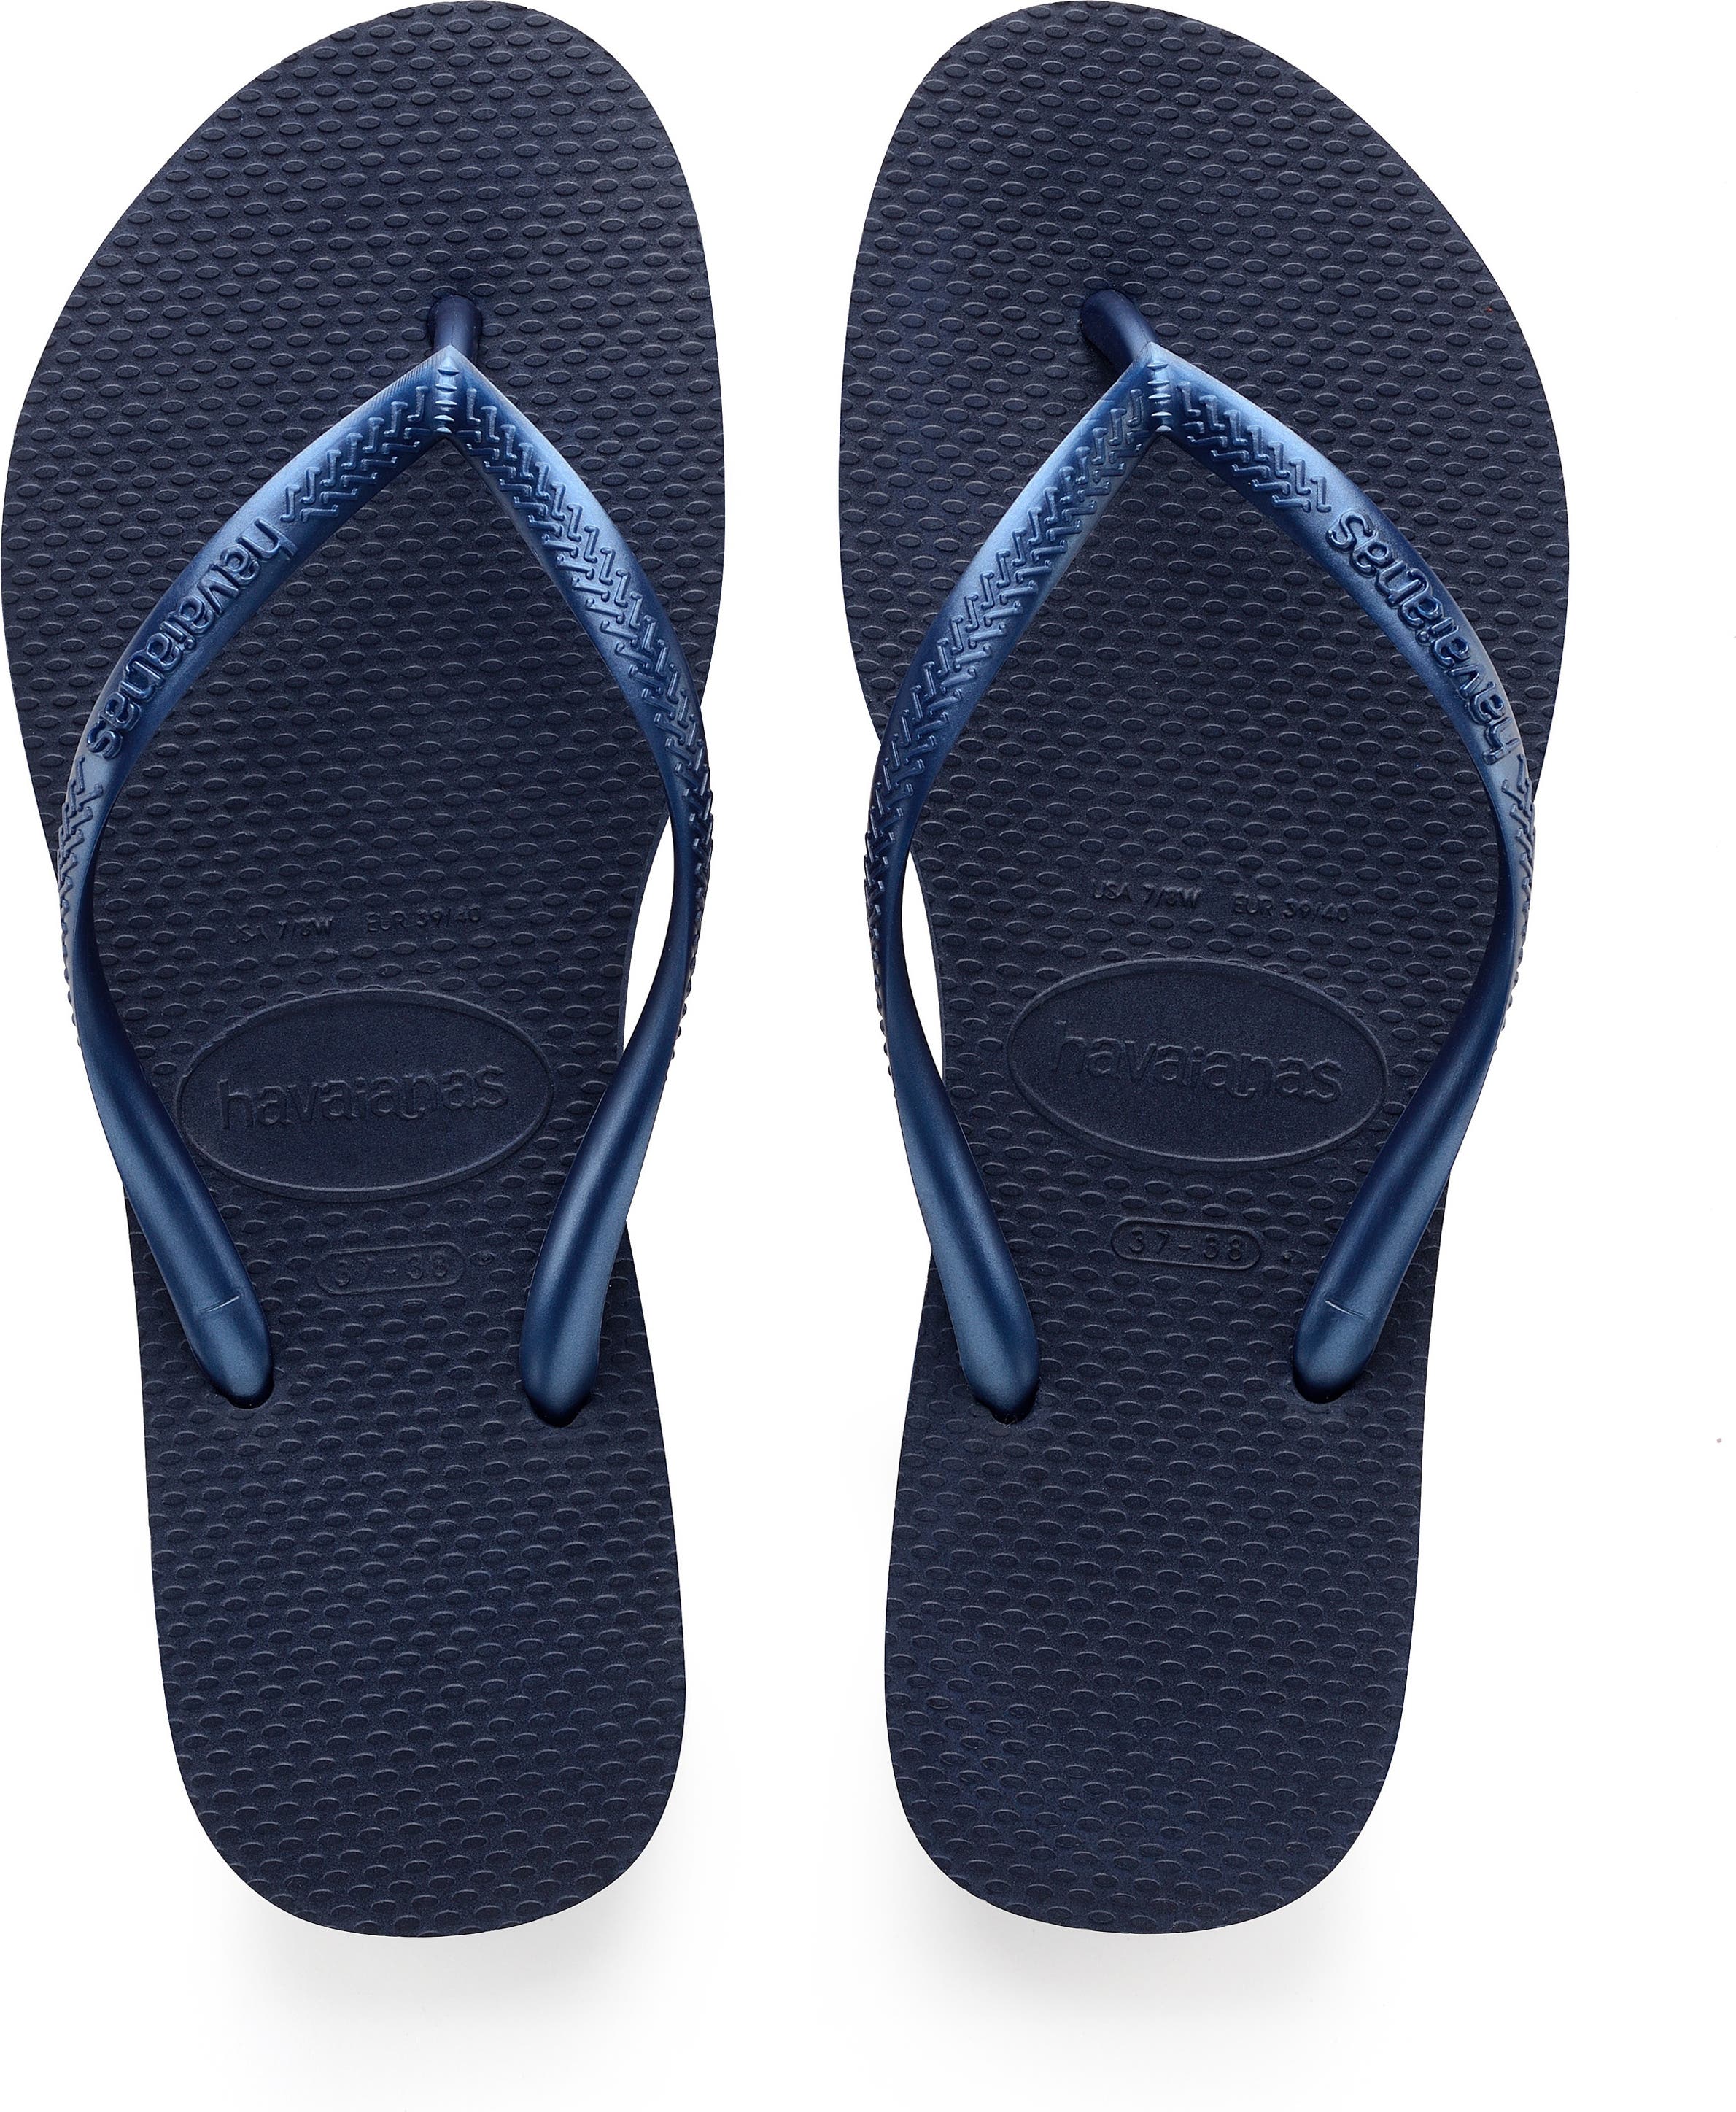 Havaianas Womens Slim Flip-Flop Sandals Hardware,, 